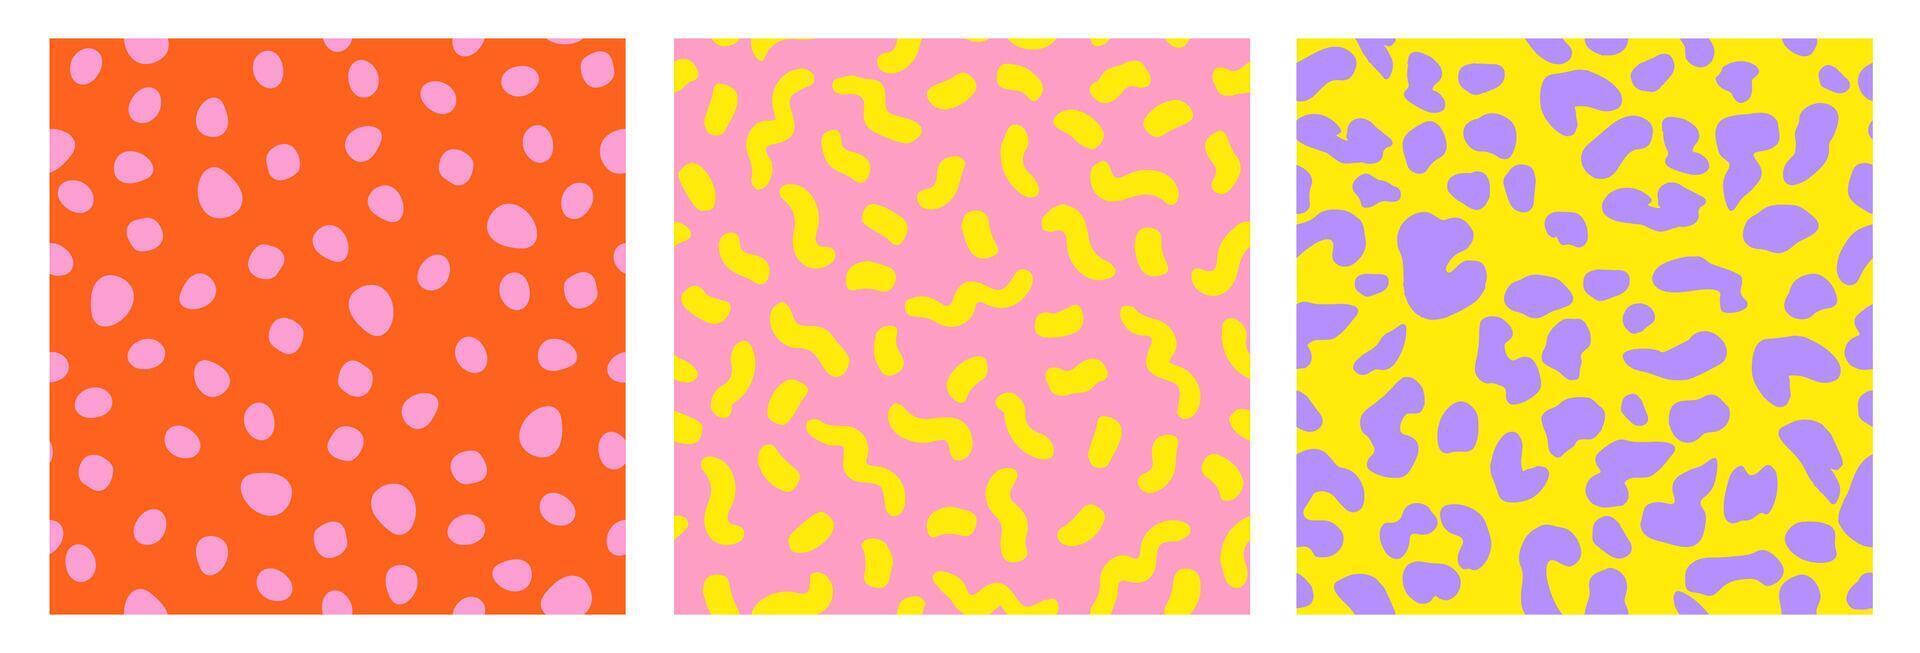 uppsättning av abstrakt leopard hud sömlös mönster. djur- skriva ut. färgrik platt design prydnad för bakgrund, textil, affisch, omslag, tapet. vektor illustration.